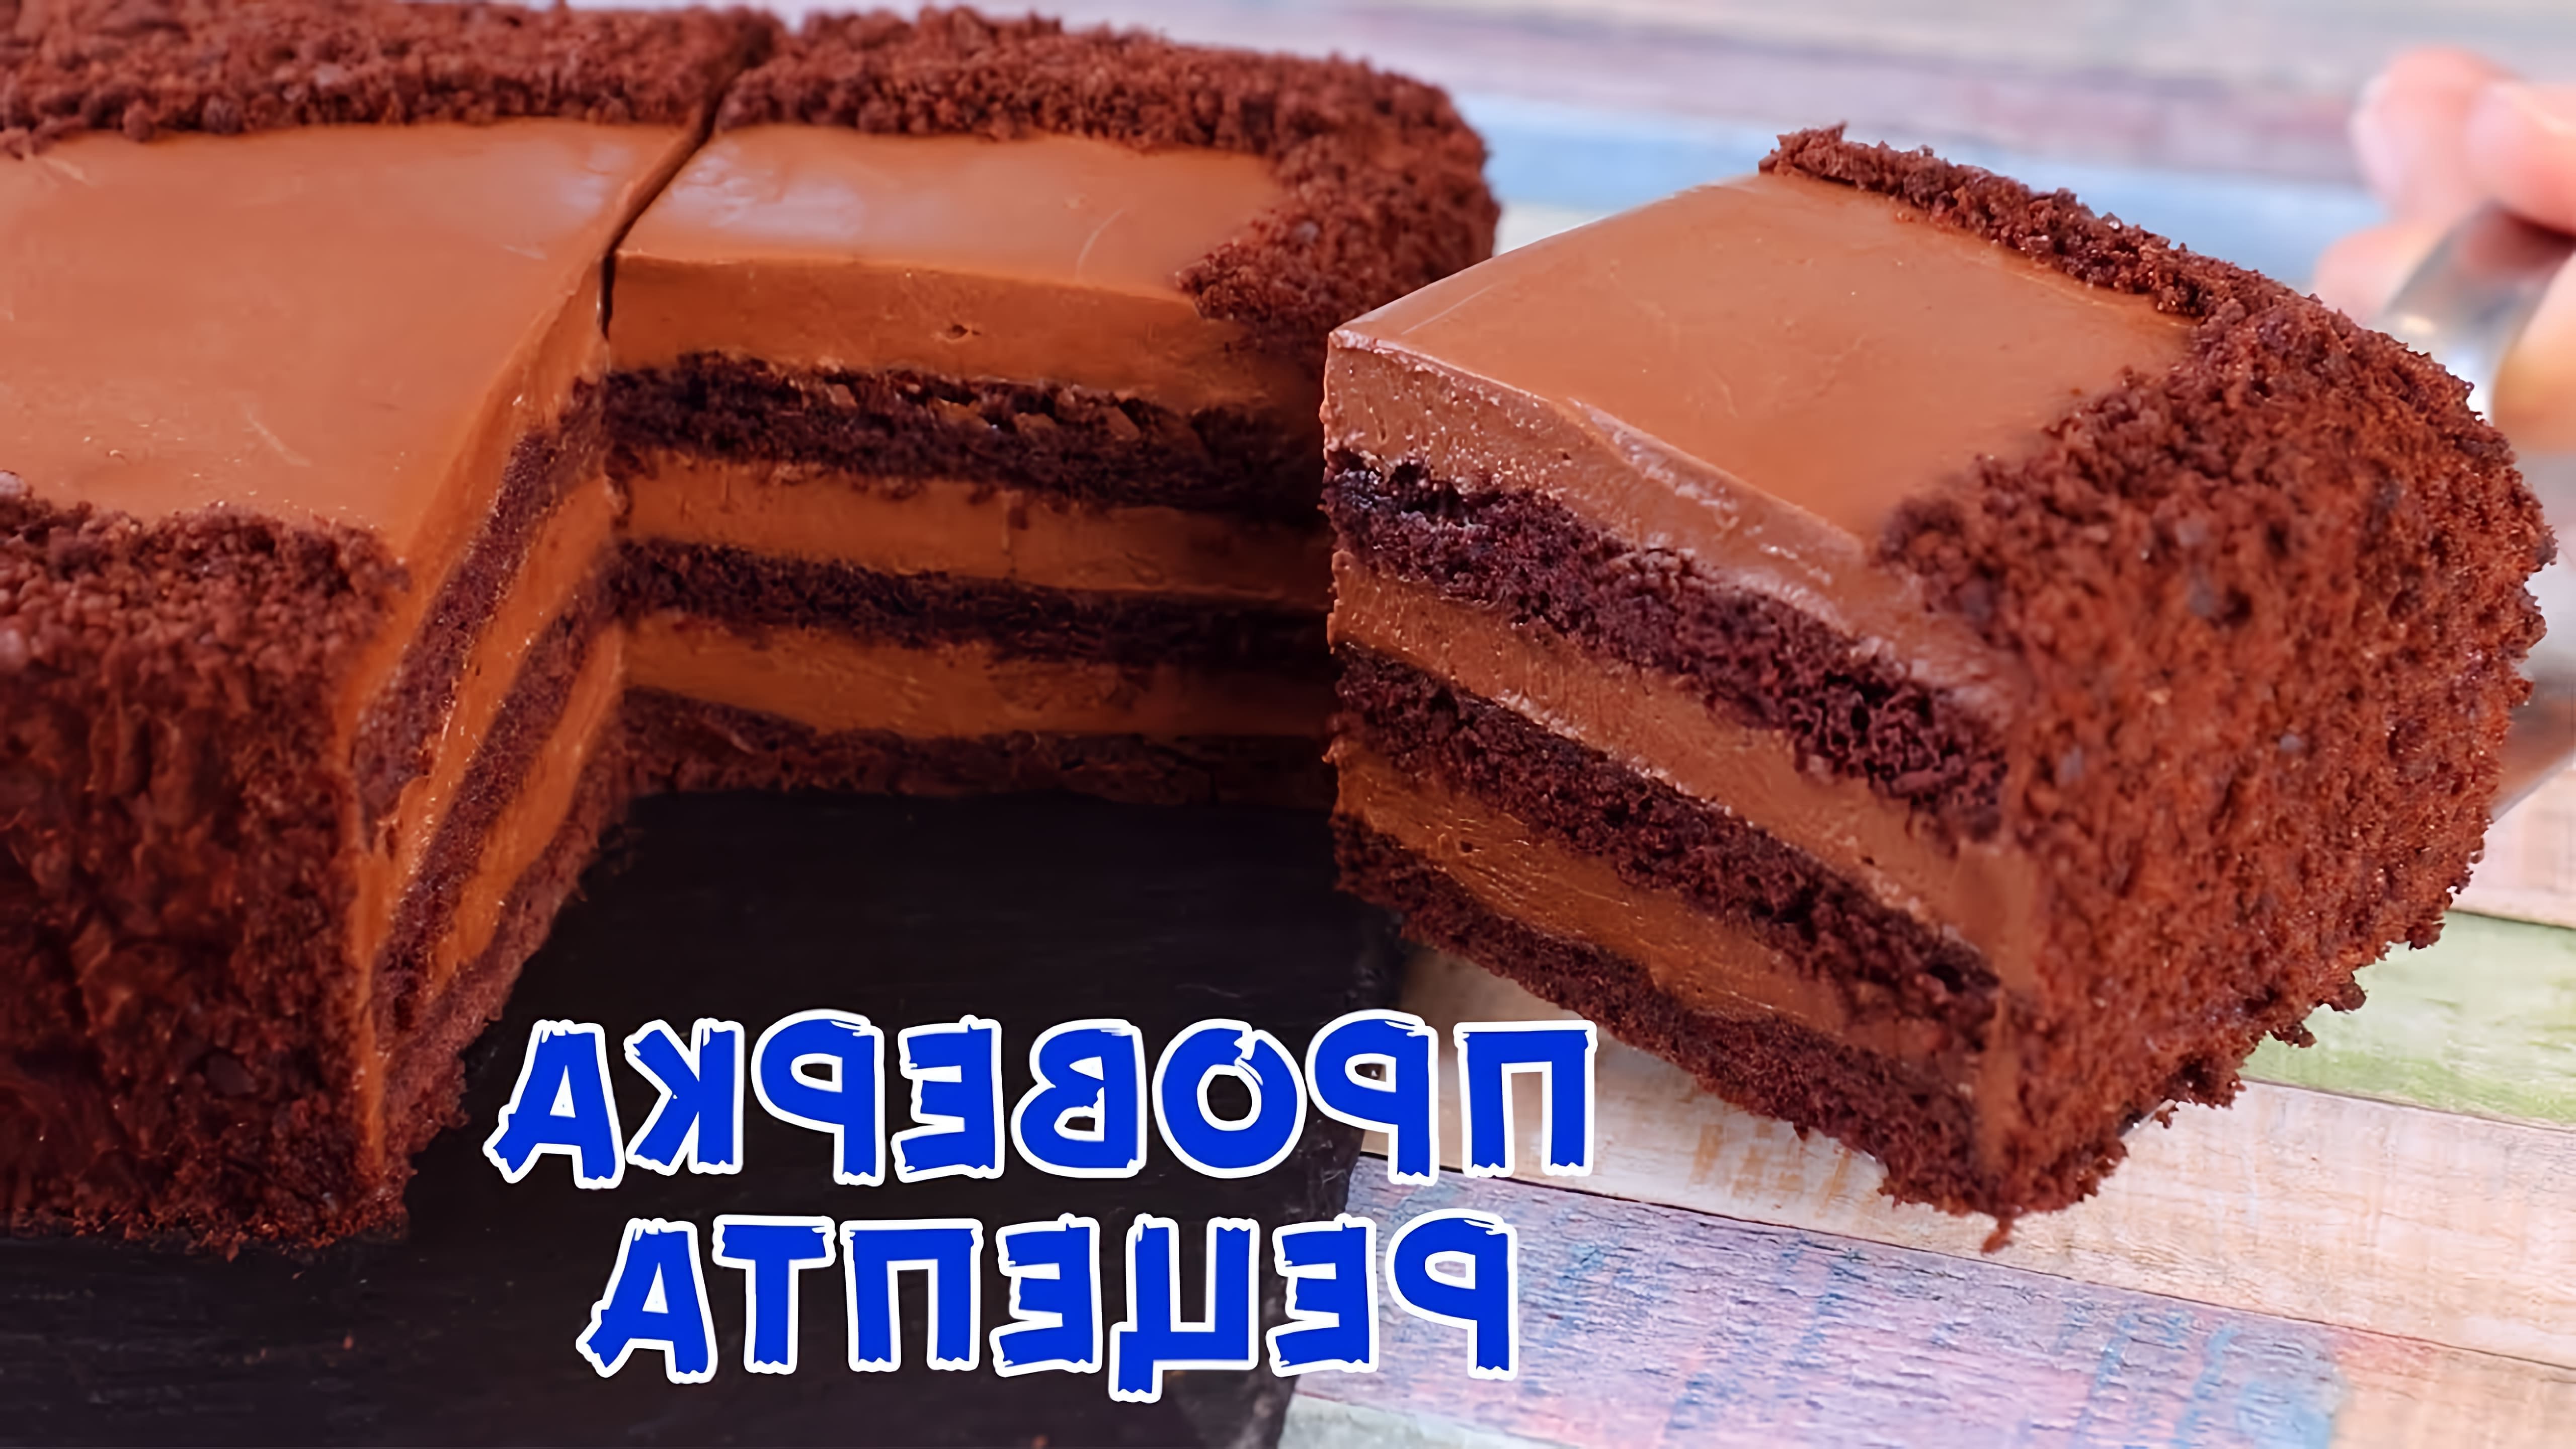 В этом видео демонстрируется рецепт шоколадного торта, приготовленного на сковороде